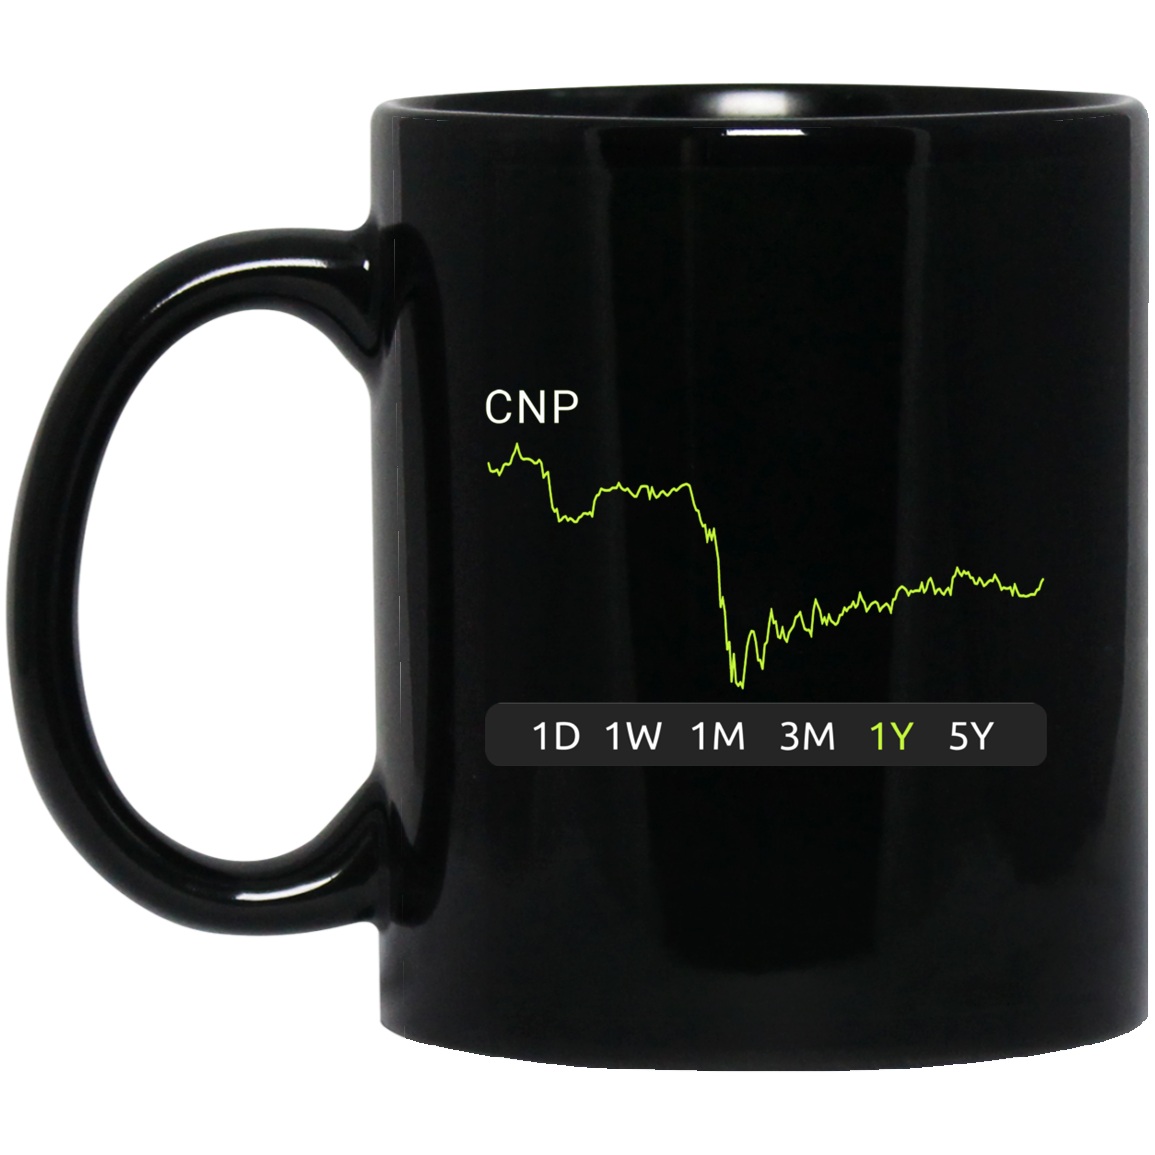 CNP Stock 1y Mug